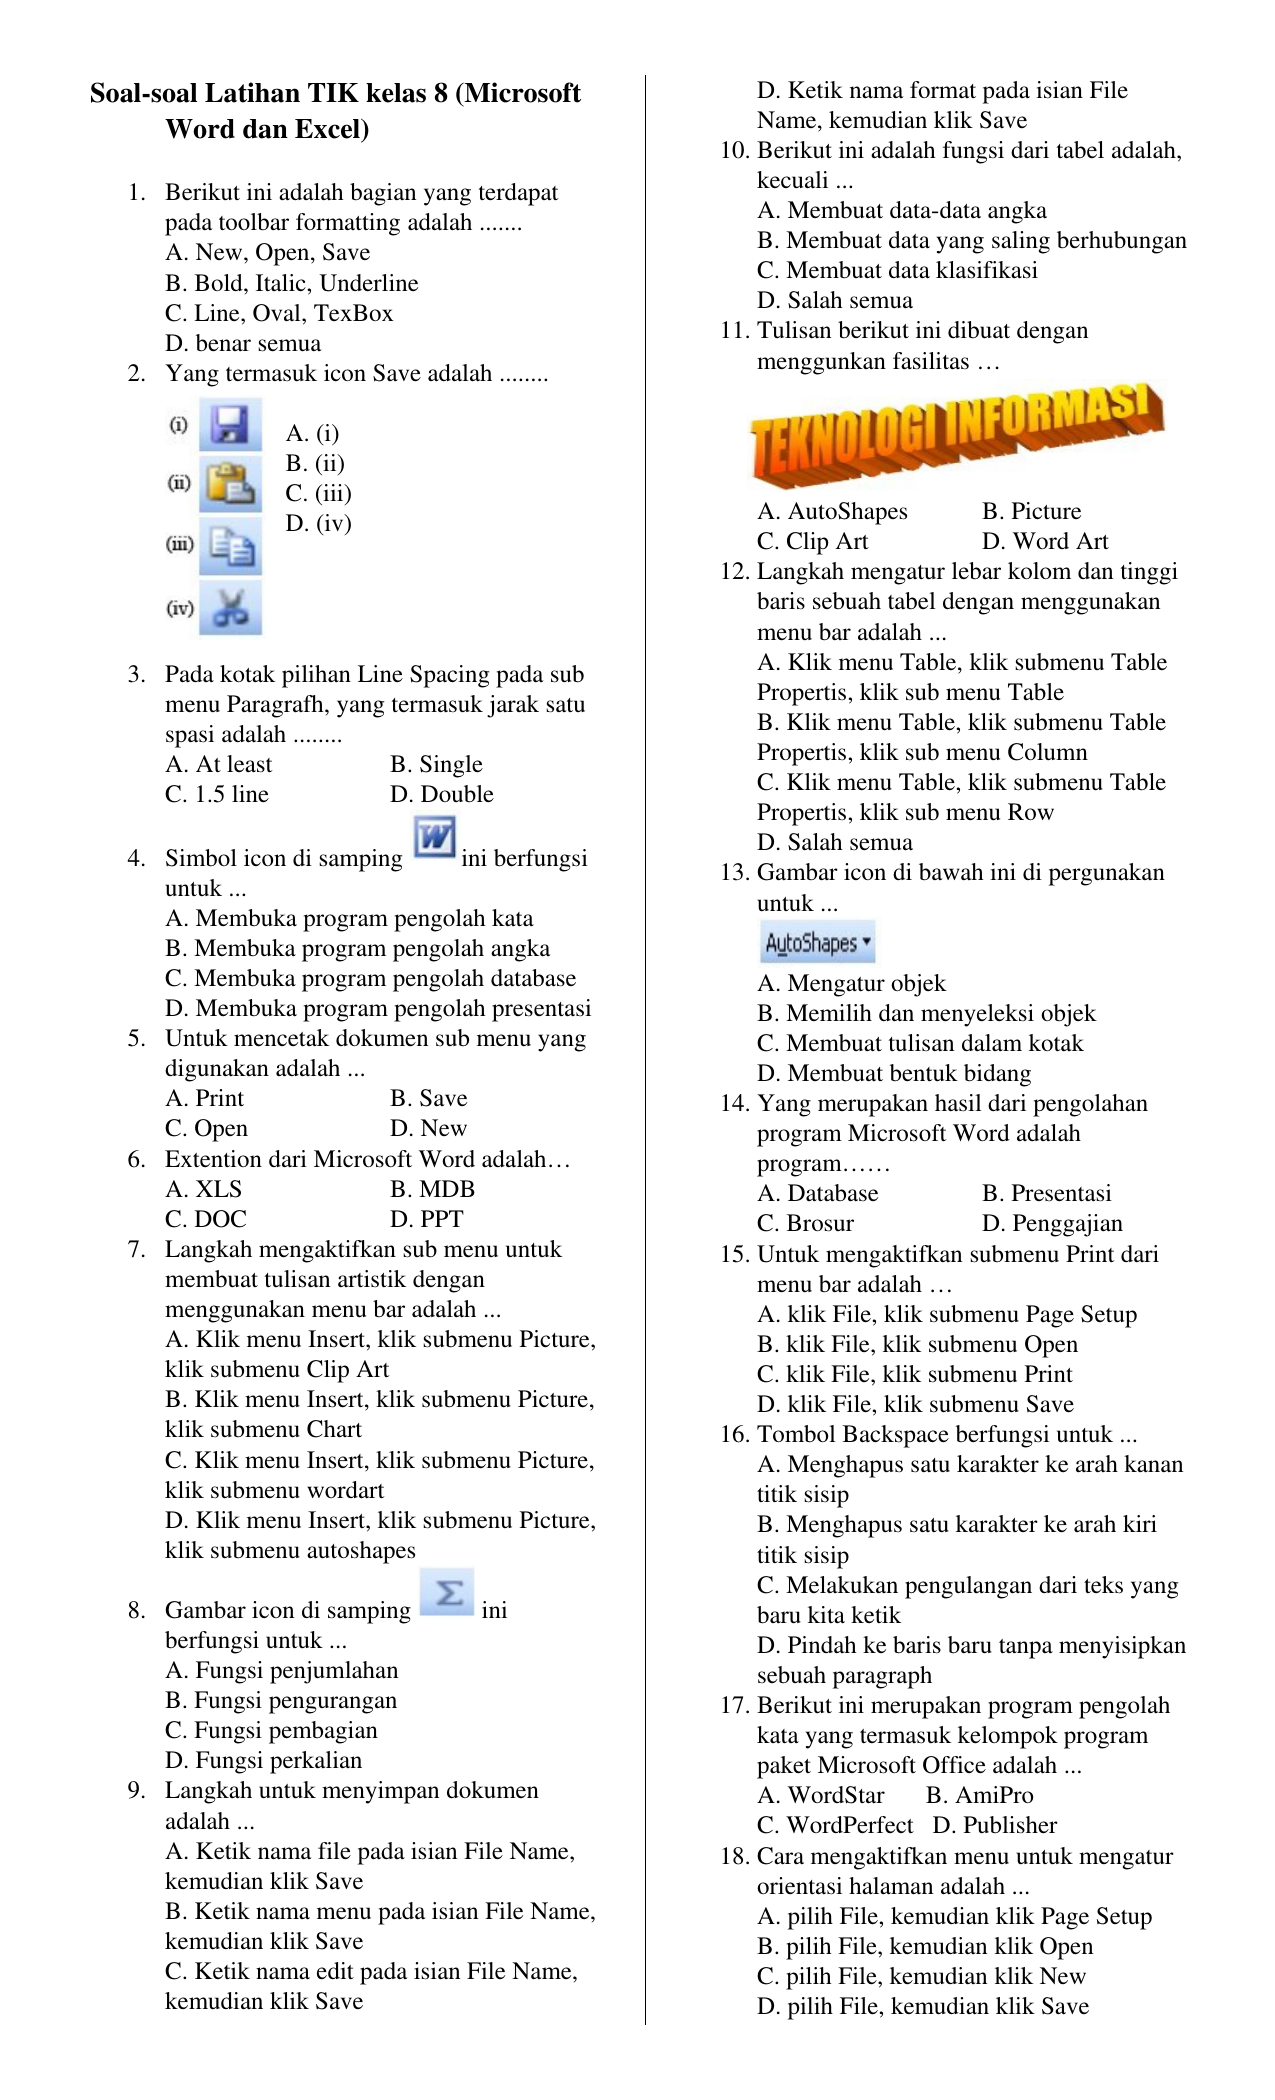 Soalsoal Latihan TIK kelas 8 (Microsoft Word dan Excel)